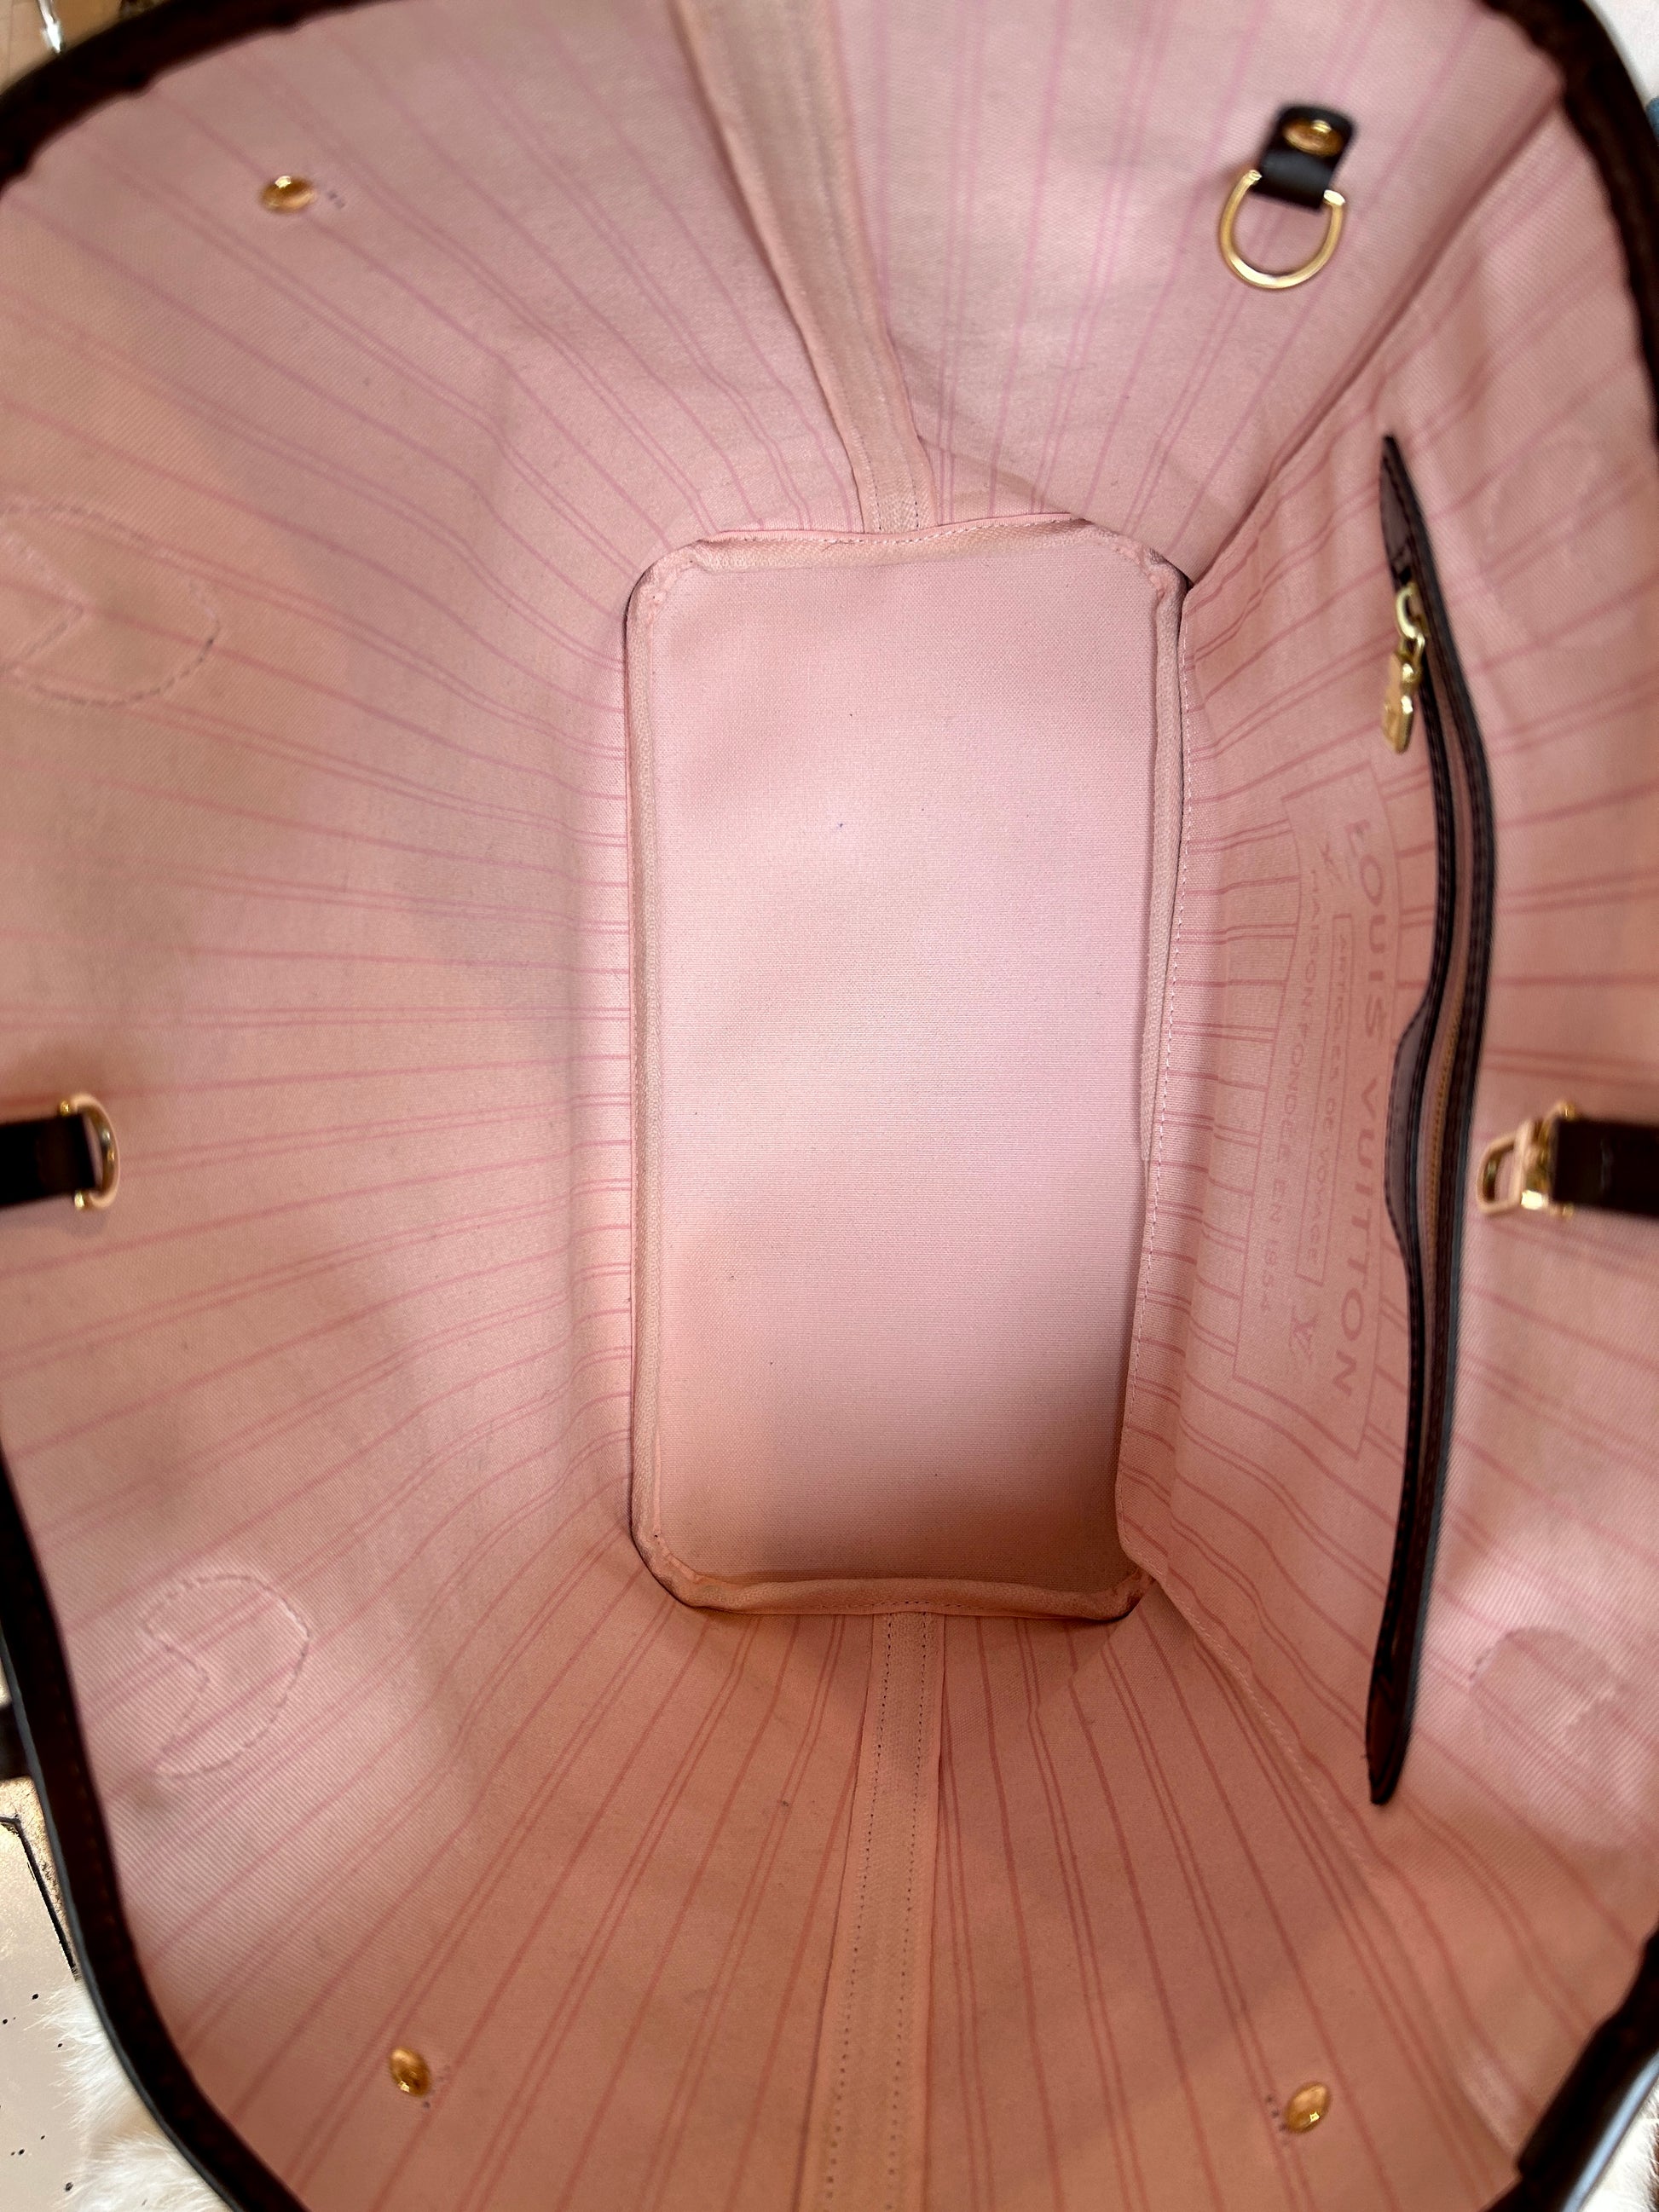 Neverfull mm Damier ebene Ballerine pink interior